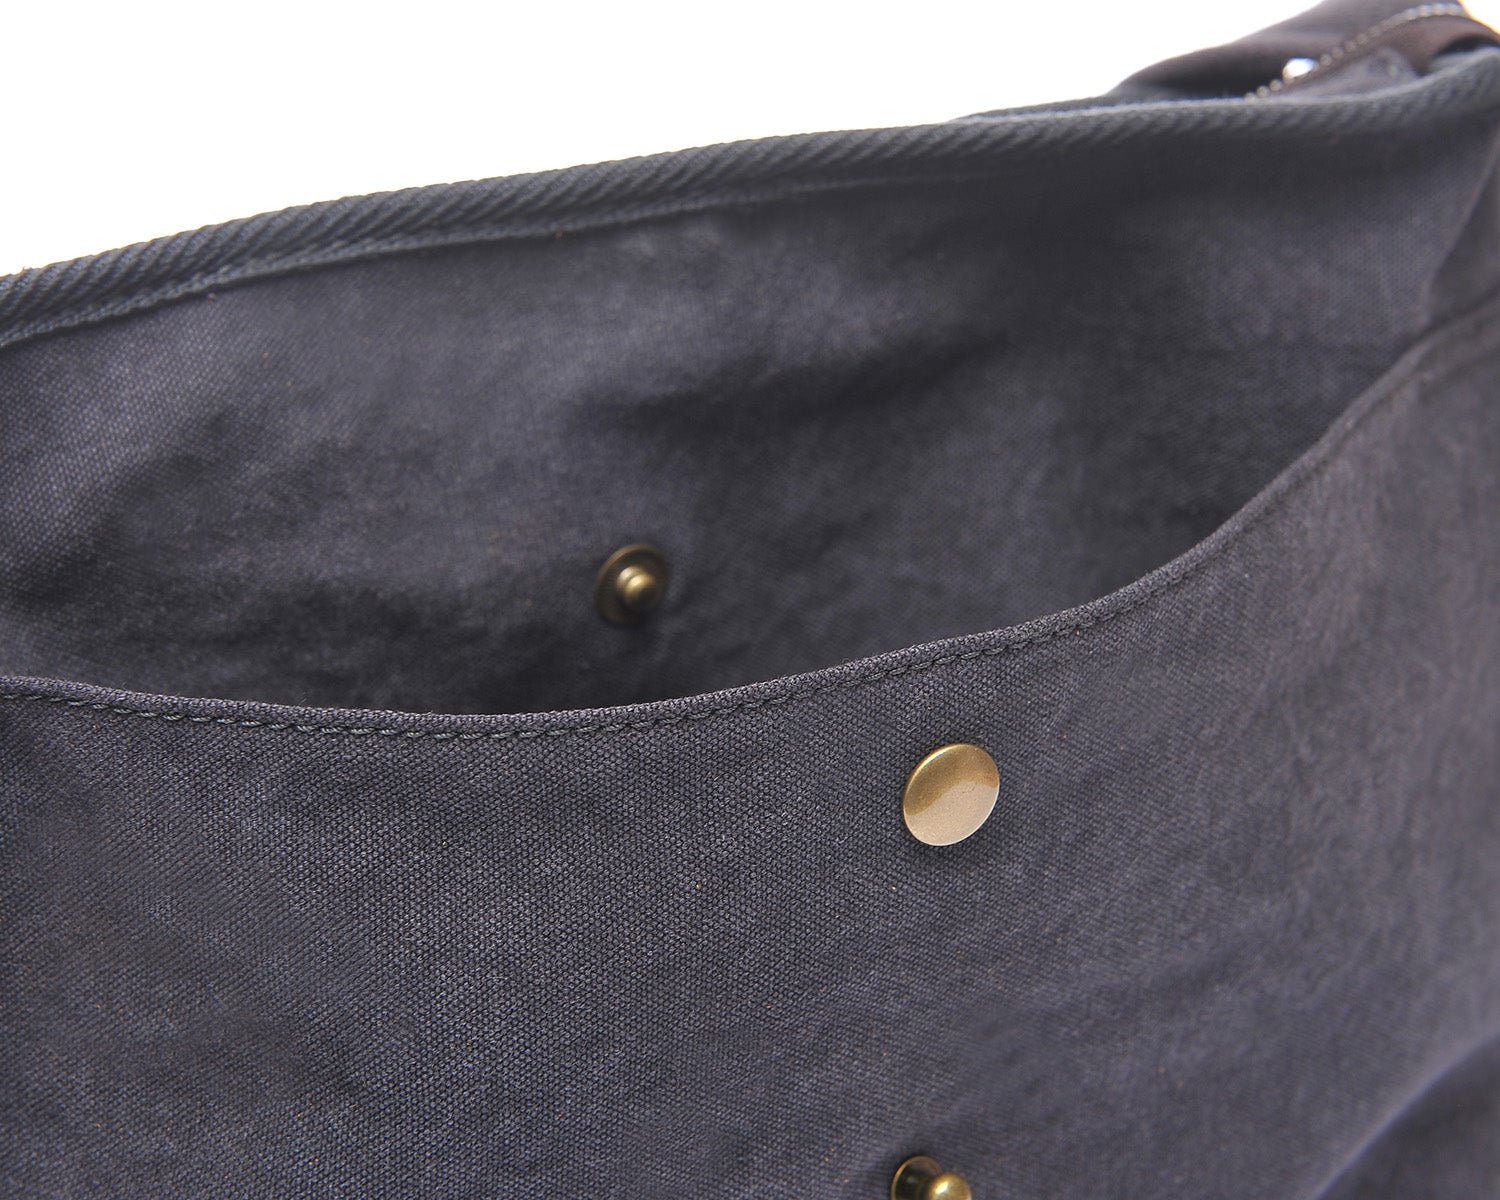 DapperG Modern Twist Leather Shoulder Bag